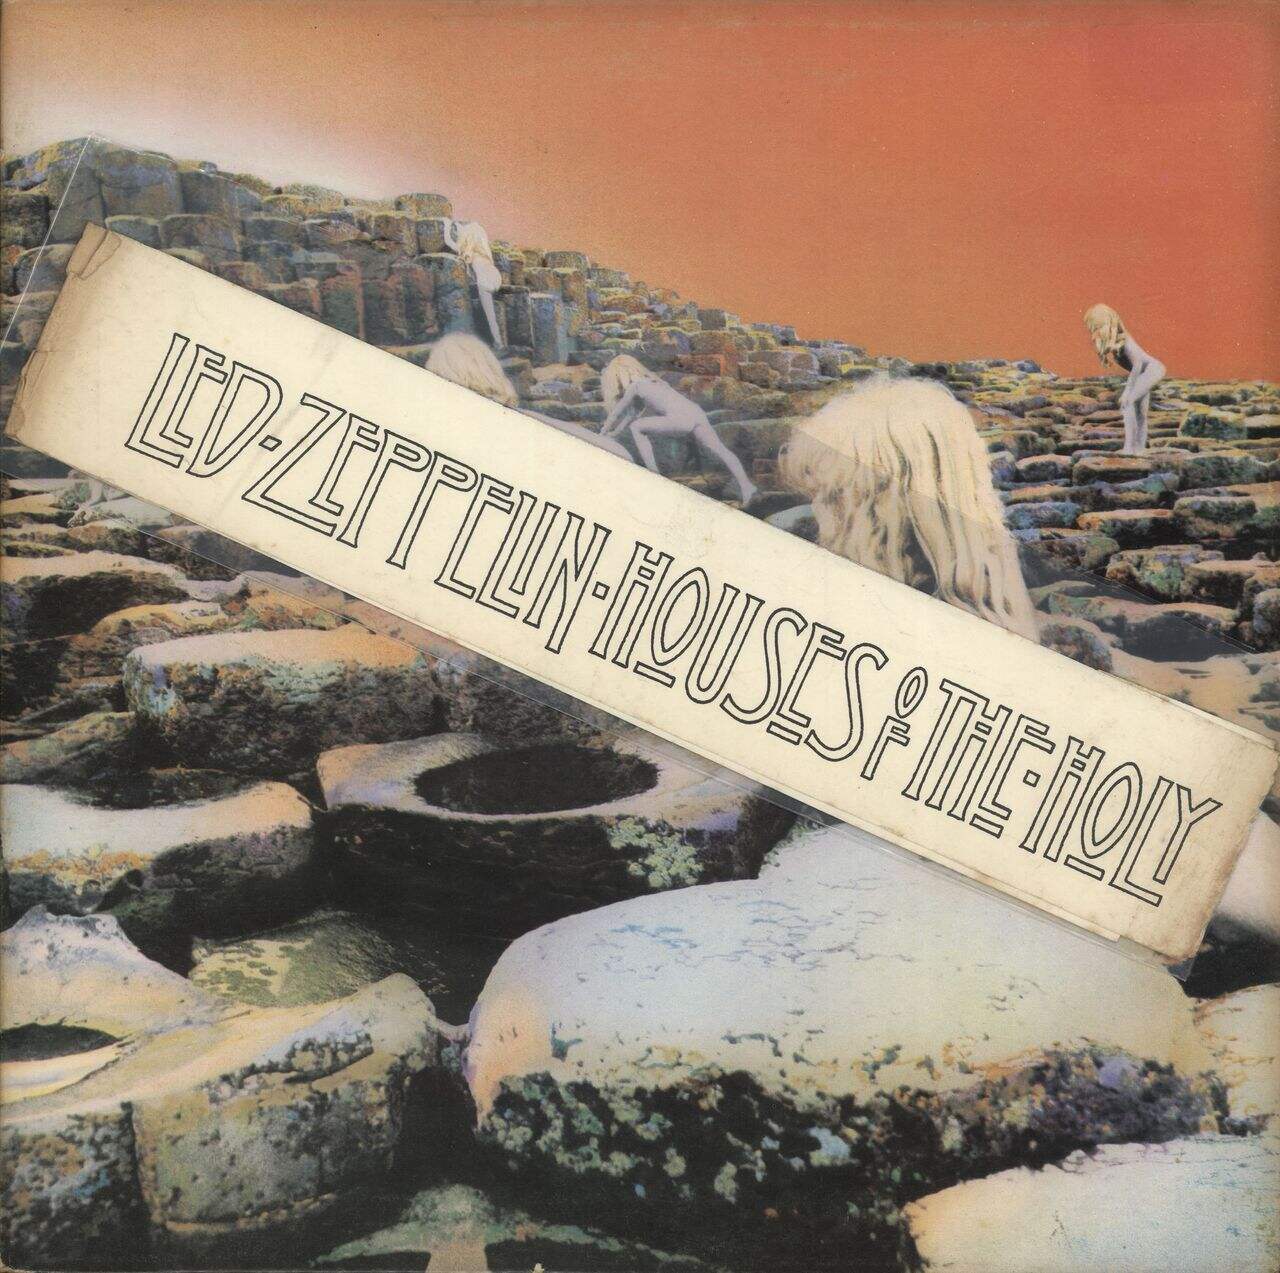 Led Zeppelin Houses Of The Holy - 1st + Bellyband - VG UK Vinyl LP